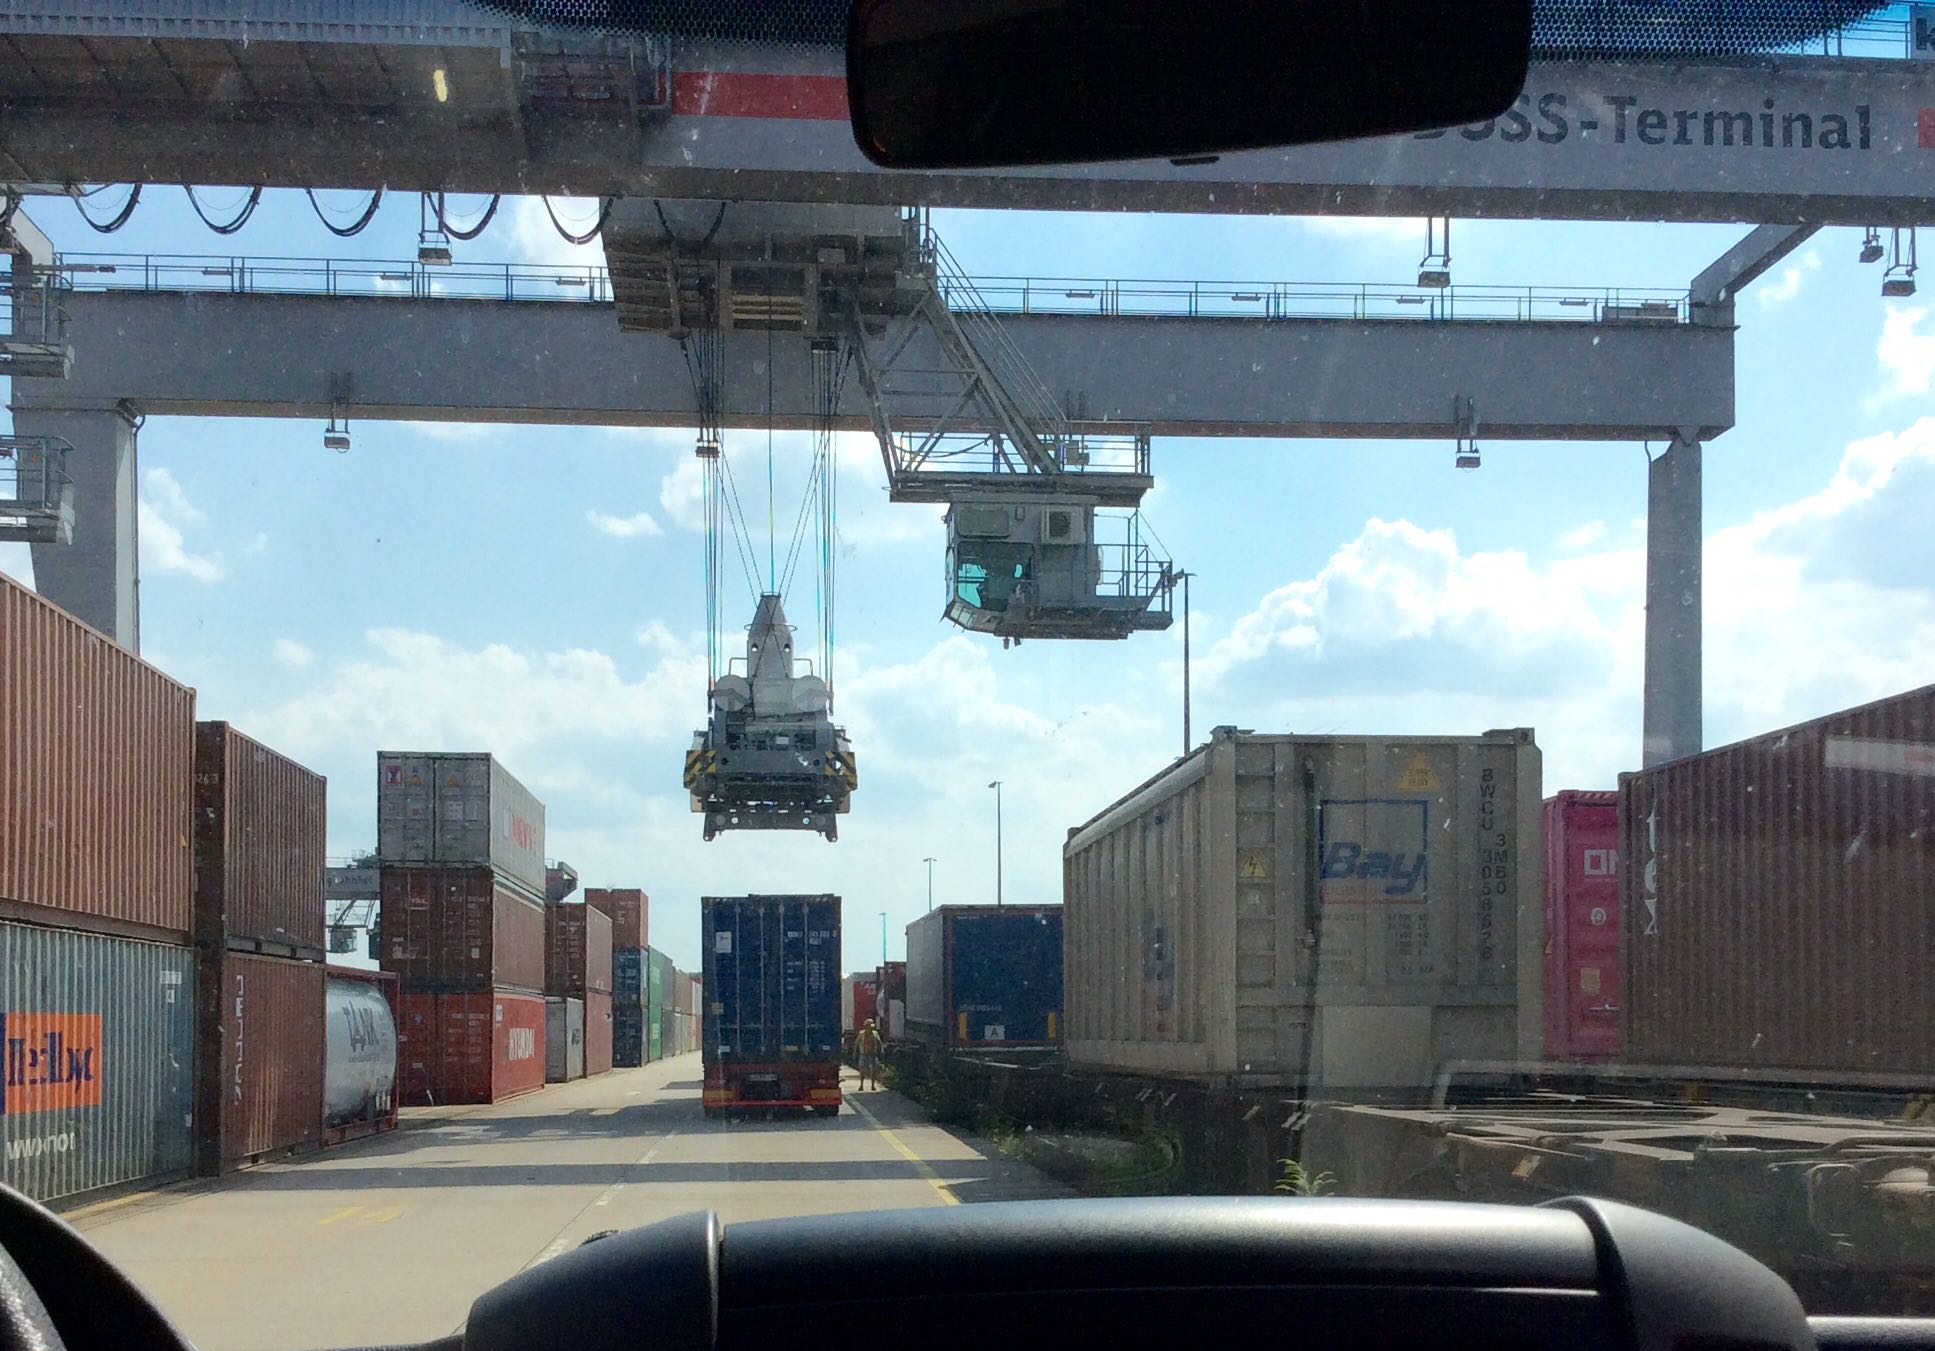 Güterverkehr und Logistik in der Coronakrise